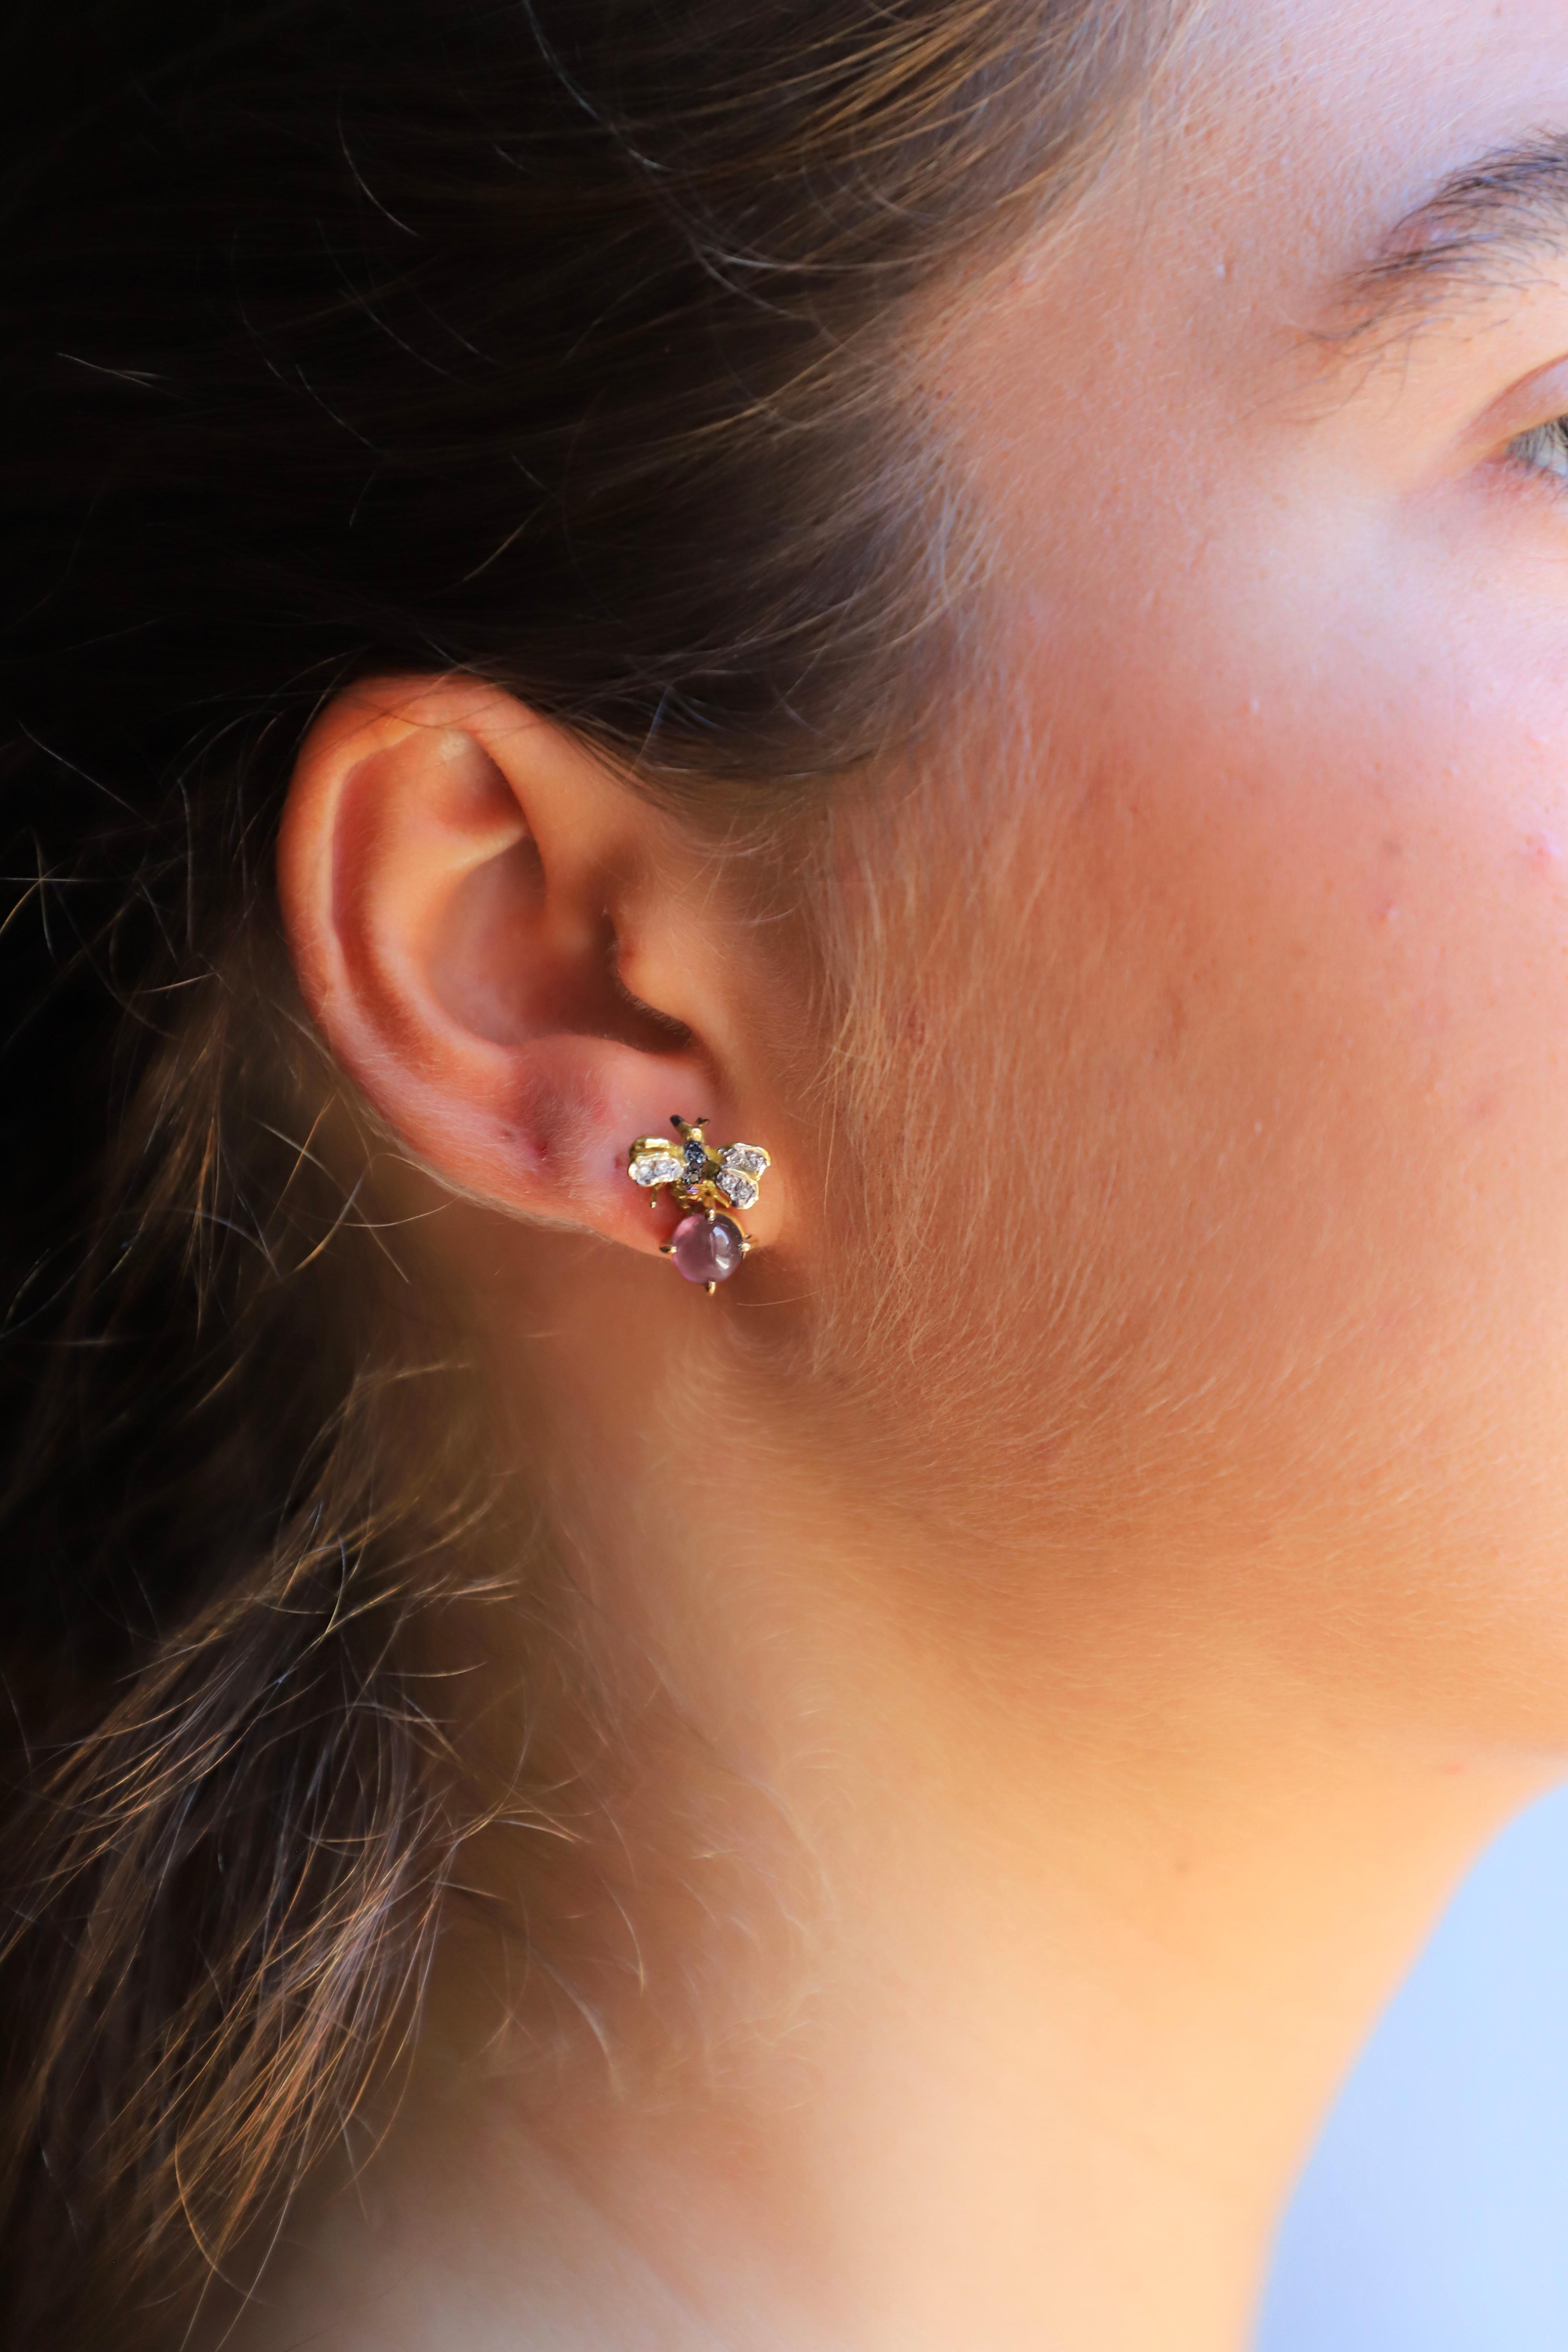 Romantic Rossella Ugolini 18K Gold Little Bee-Inspired Earrings Diamonds and Rose Quartz For Sale